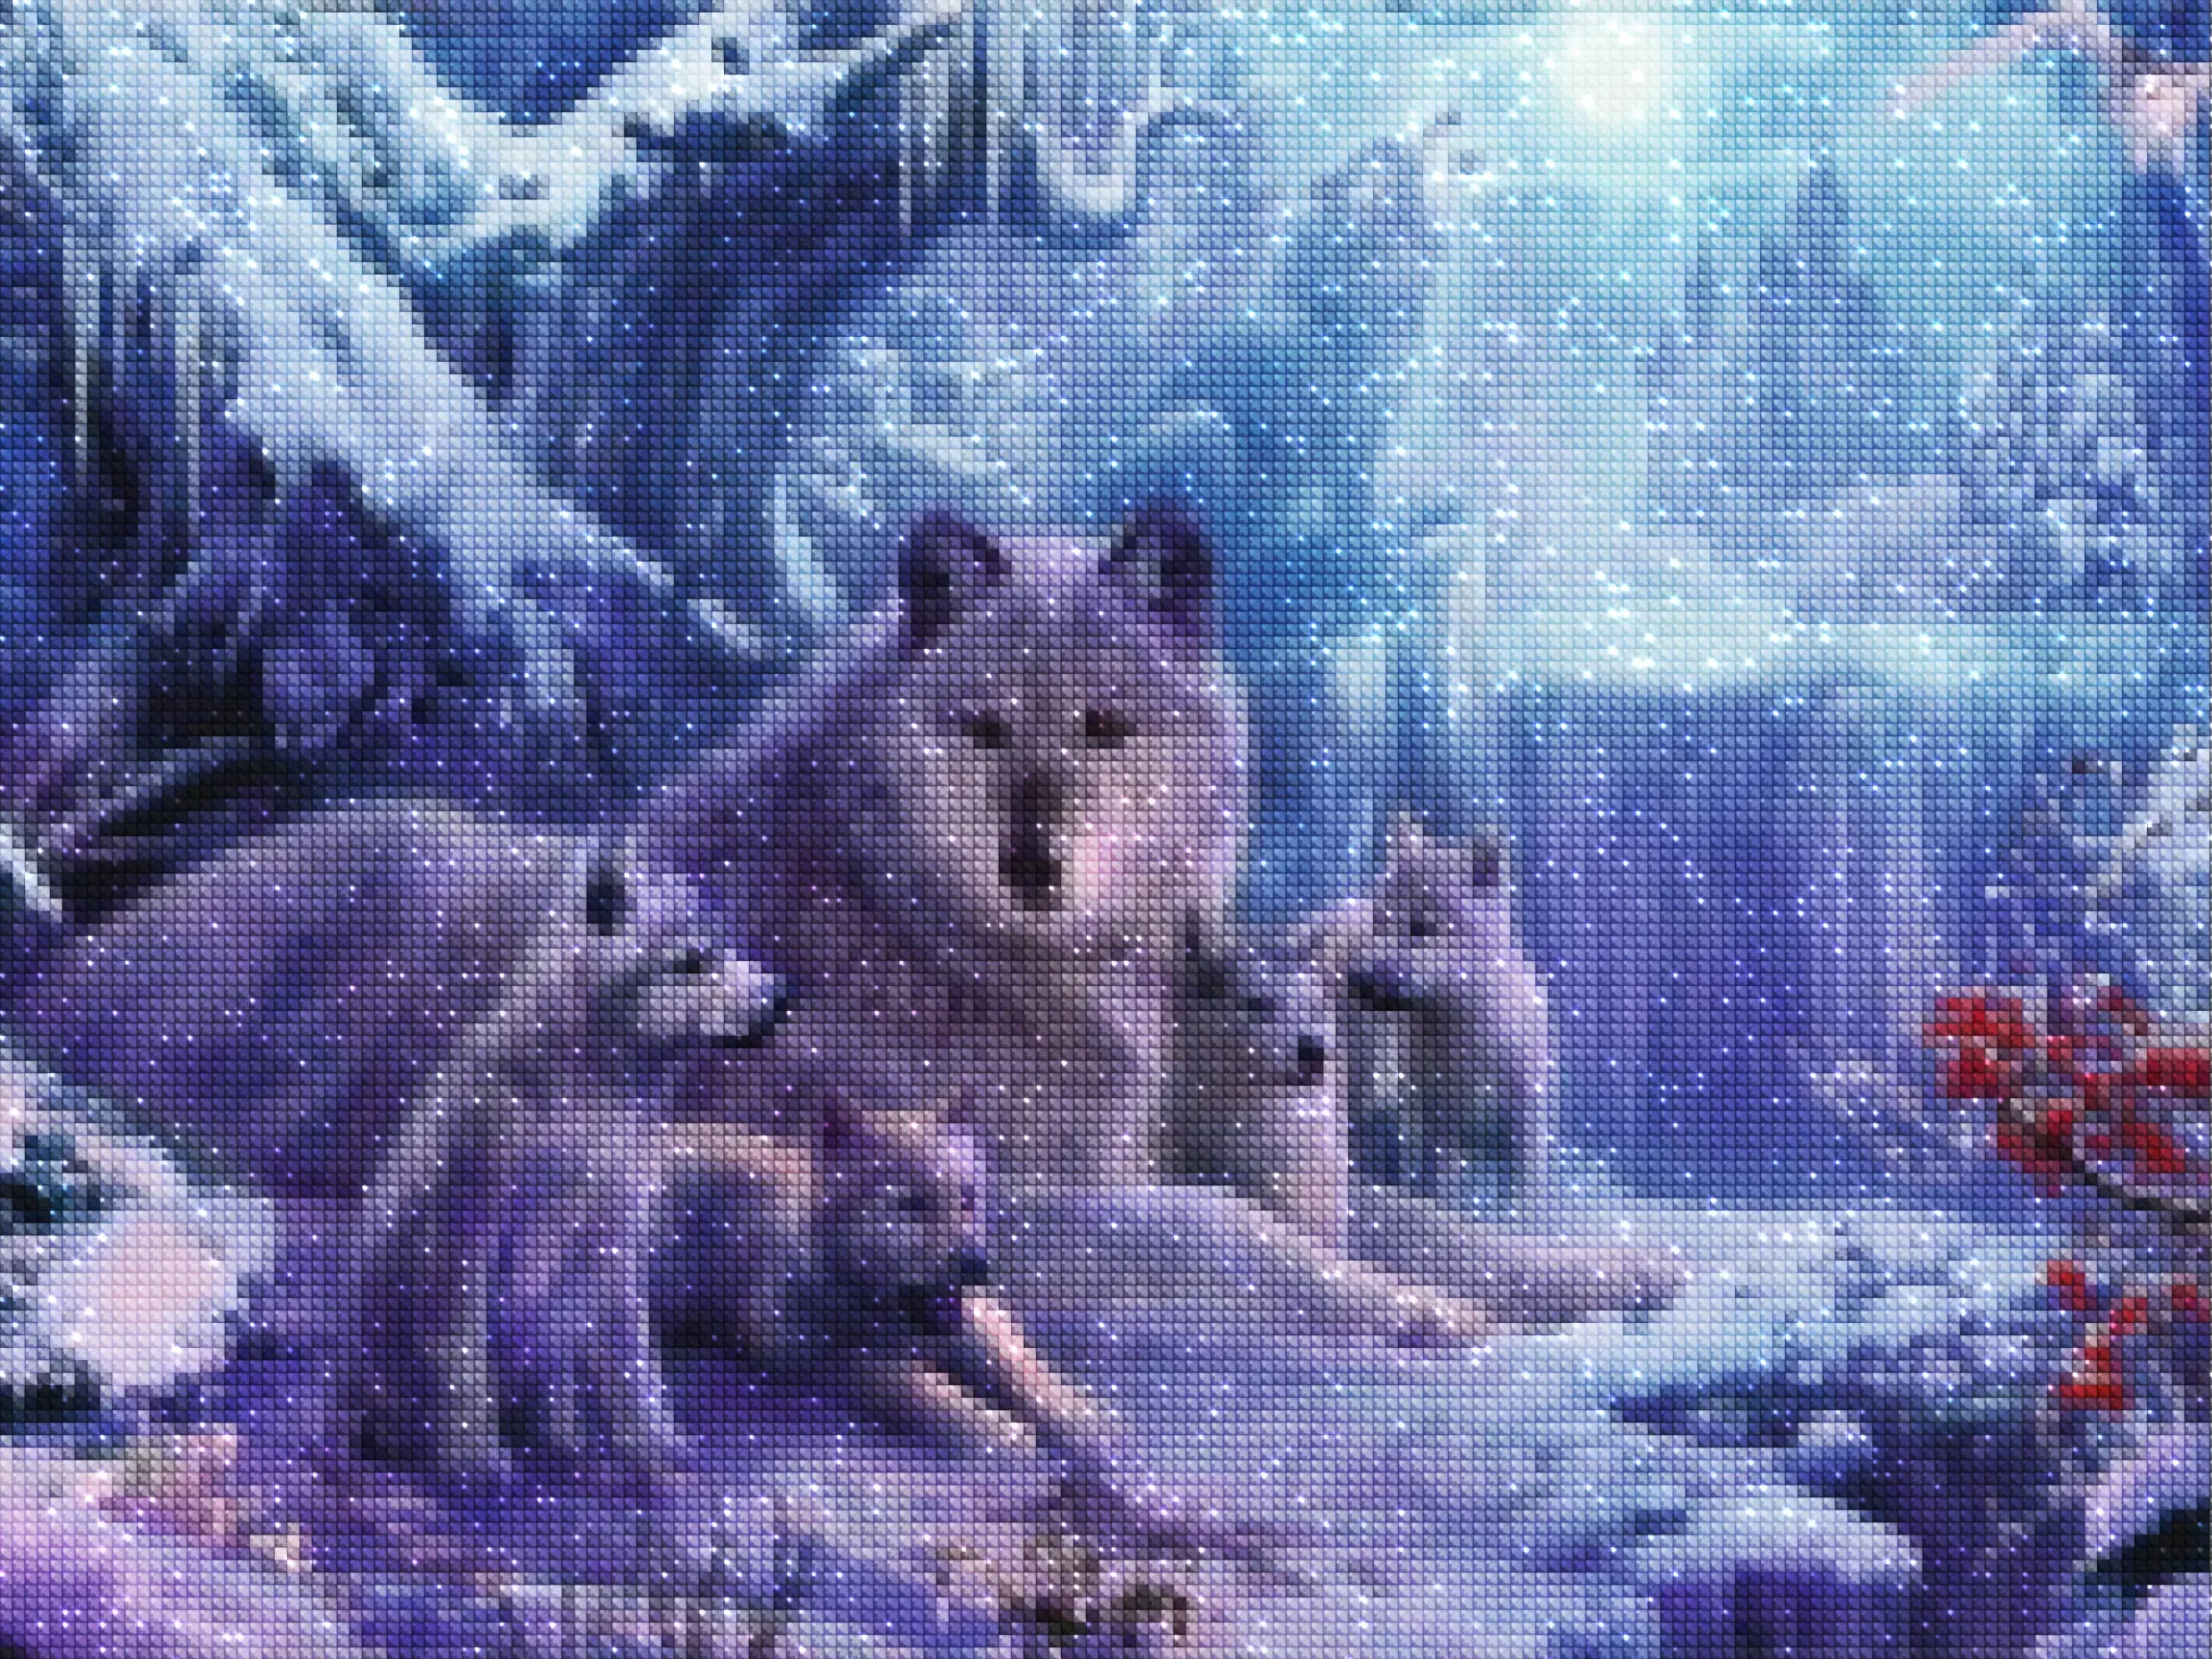 diamantes-mago-kits-de-pintura-de-diamantes-Animales-Lobo-Manada de lobos en la nieve-diamonds.webp